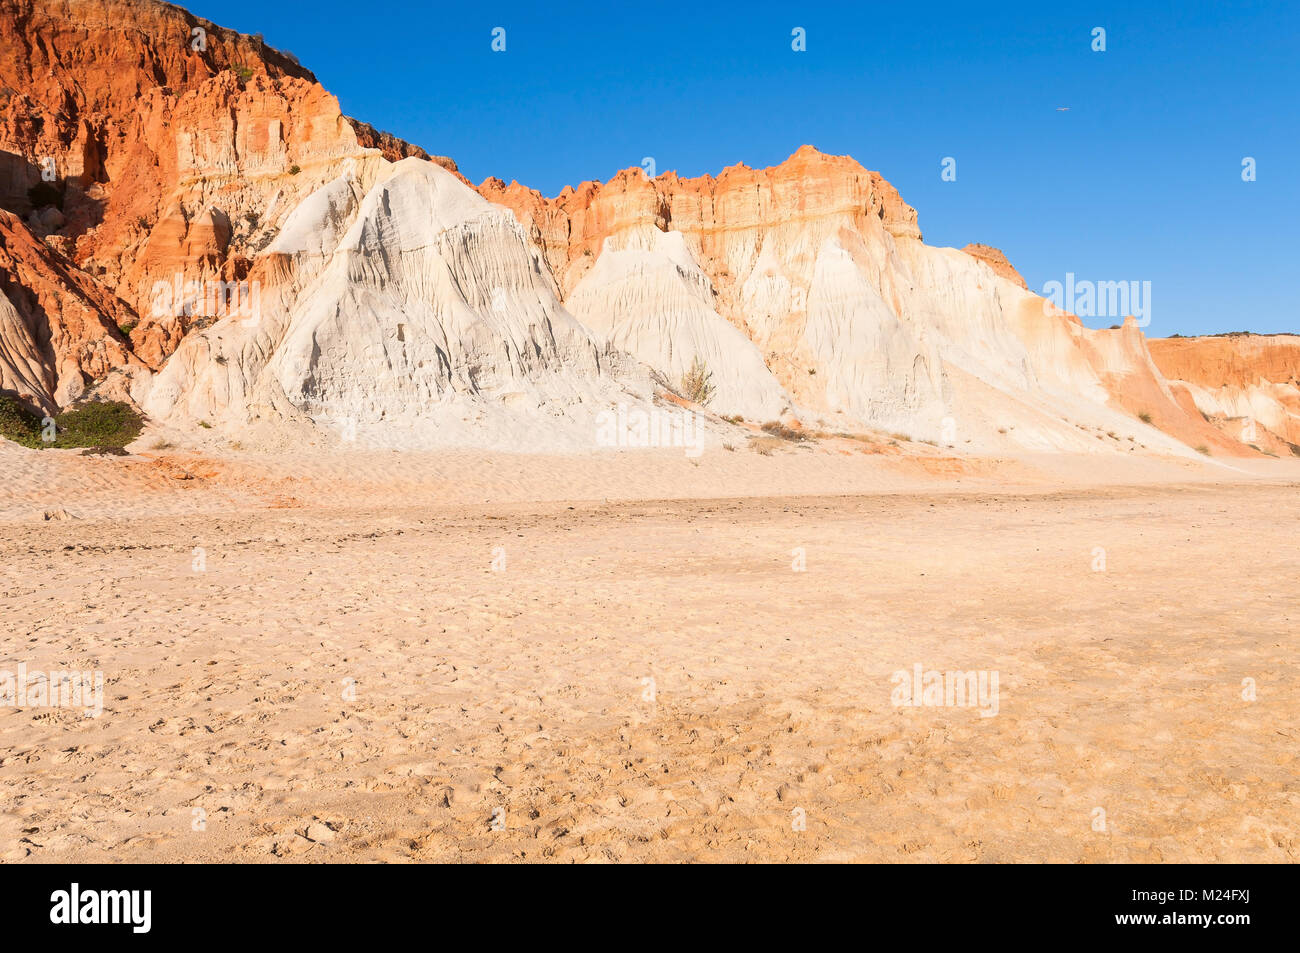 Les falaises rouges à la plage de Falesia dans la région de l'Algarve, Portugal Banque D'Images